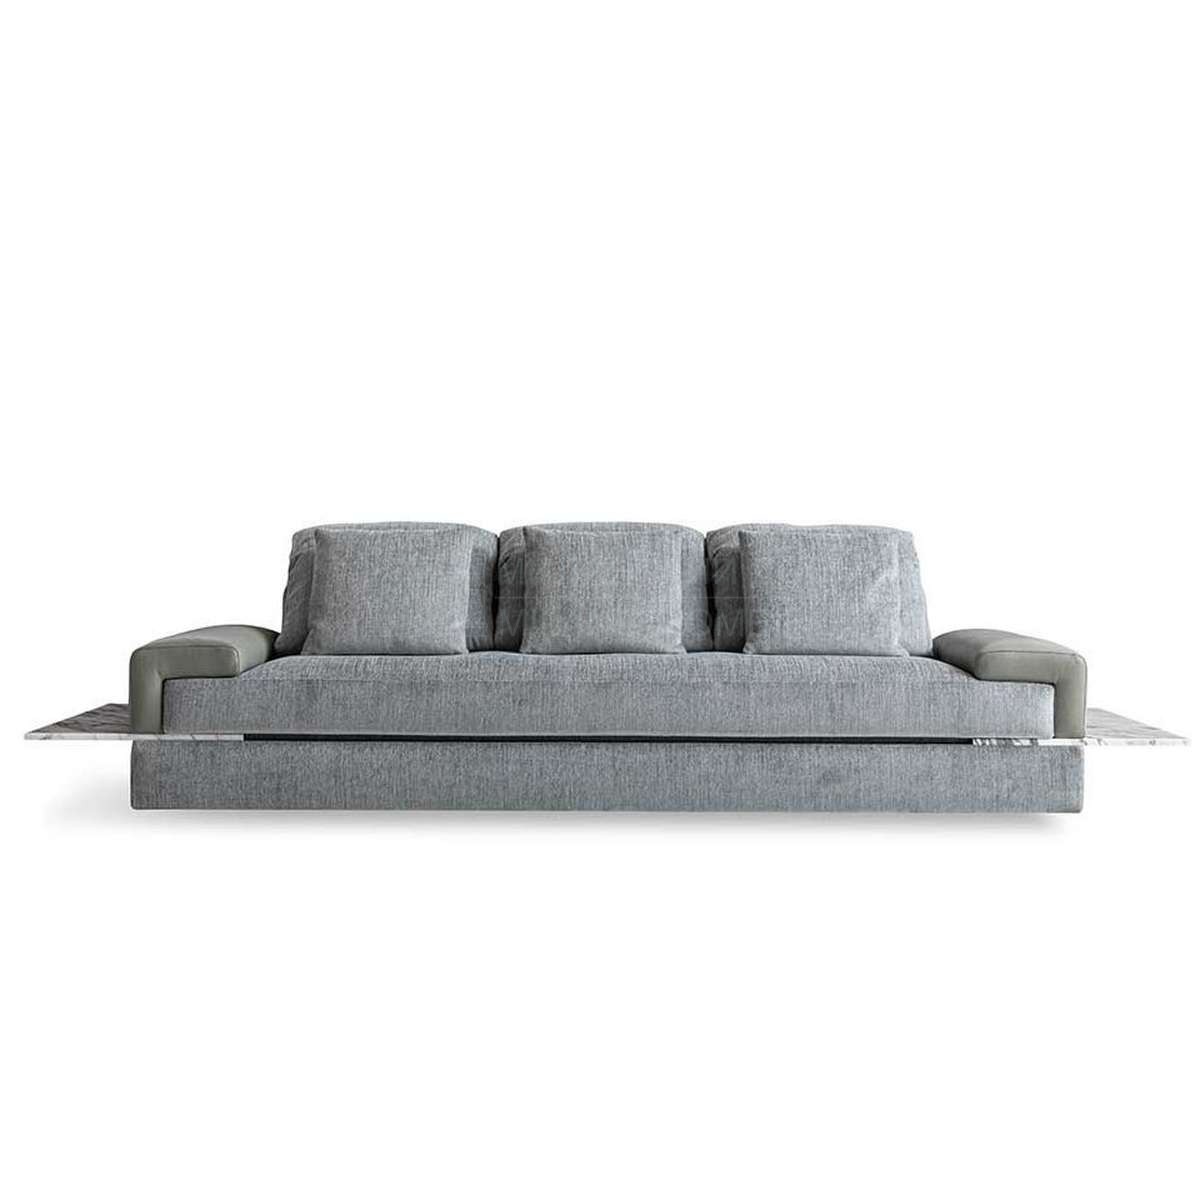 Прямой диван Somma sofa из Италии фабрики FENDI Casa